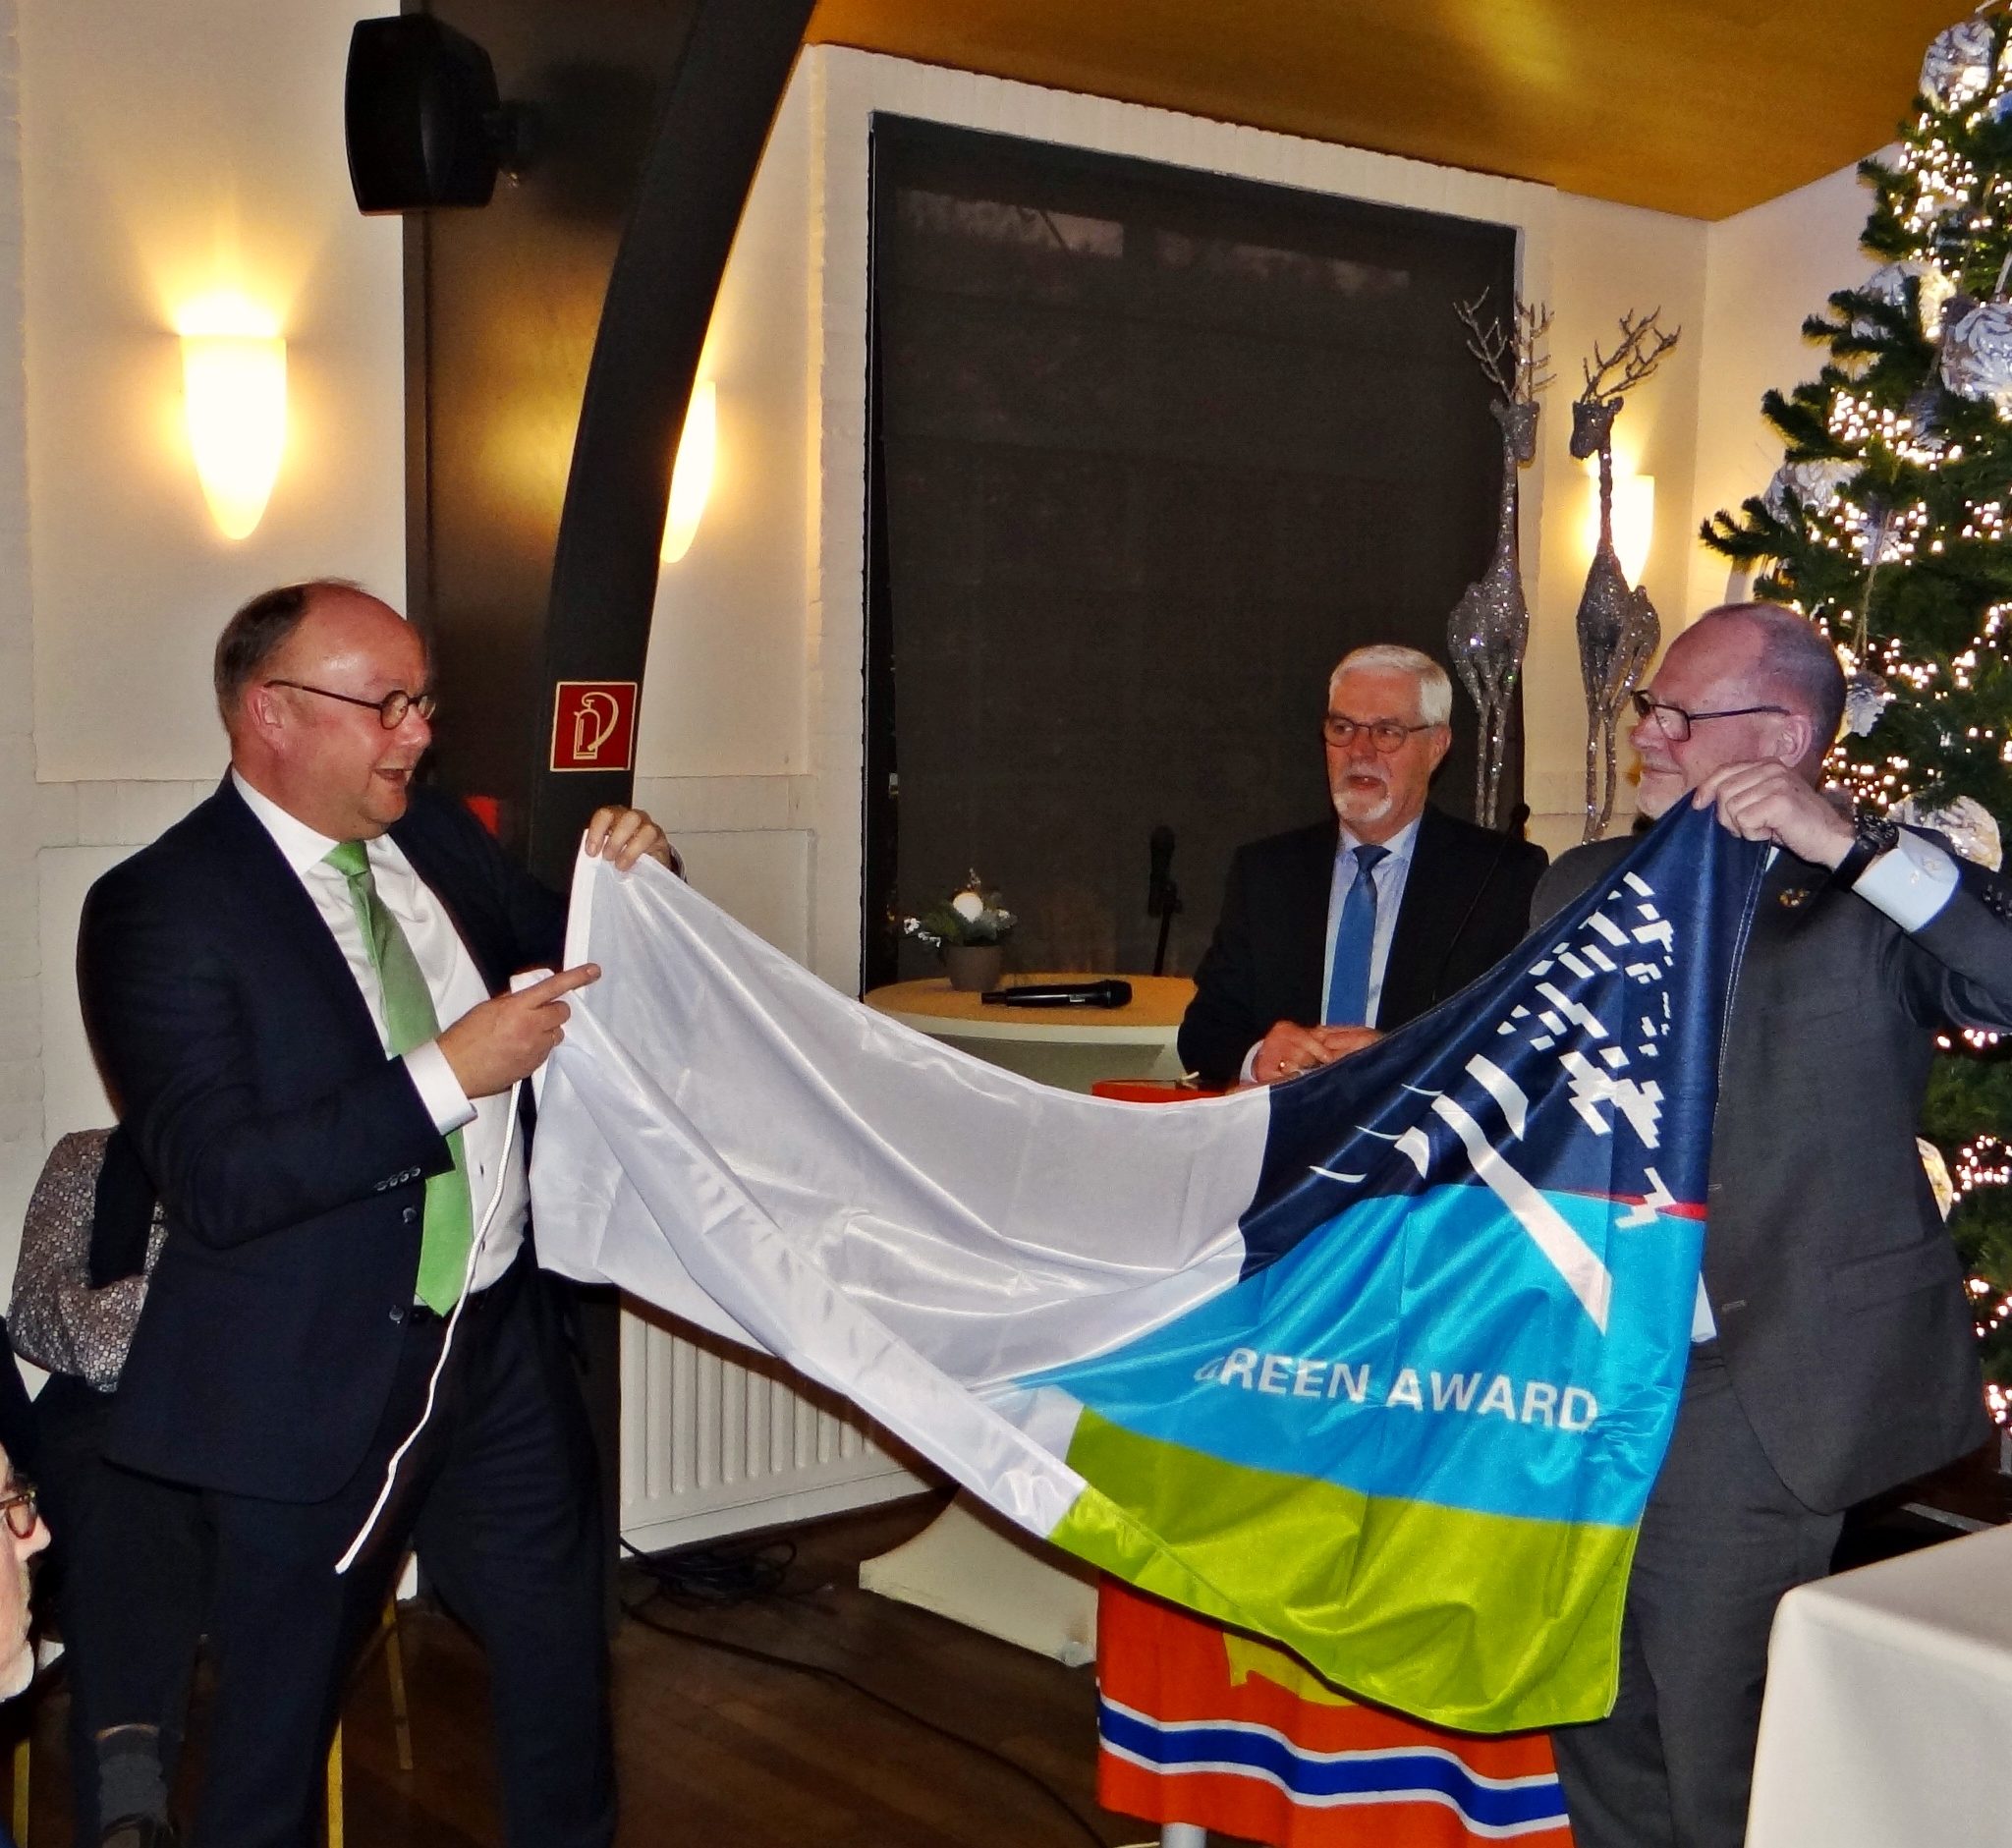 Wethouder Ton Spek (gemeente Sliedrecht) ontvangt een vlag van de Green Award Foundation uit handen van directeur Jan Fransen (rechts). Op de achtergrond afdelingsvoorzitter Joop van Belle. (Foto Dick den Braber)